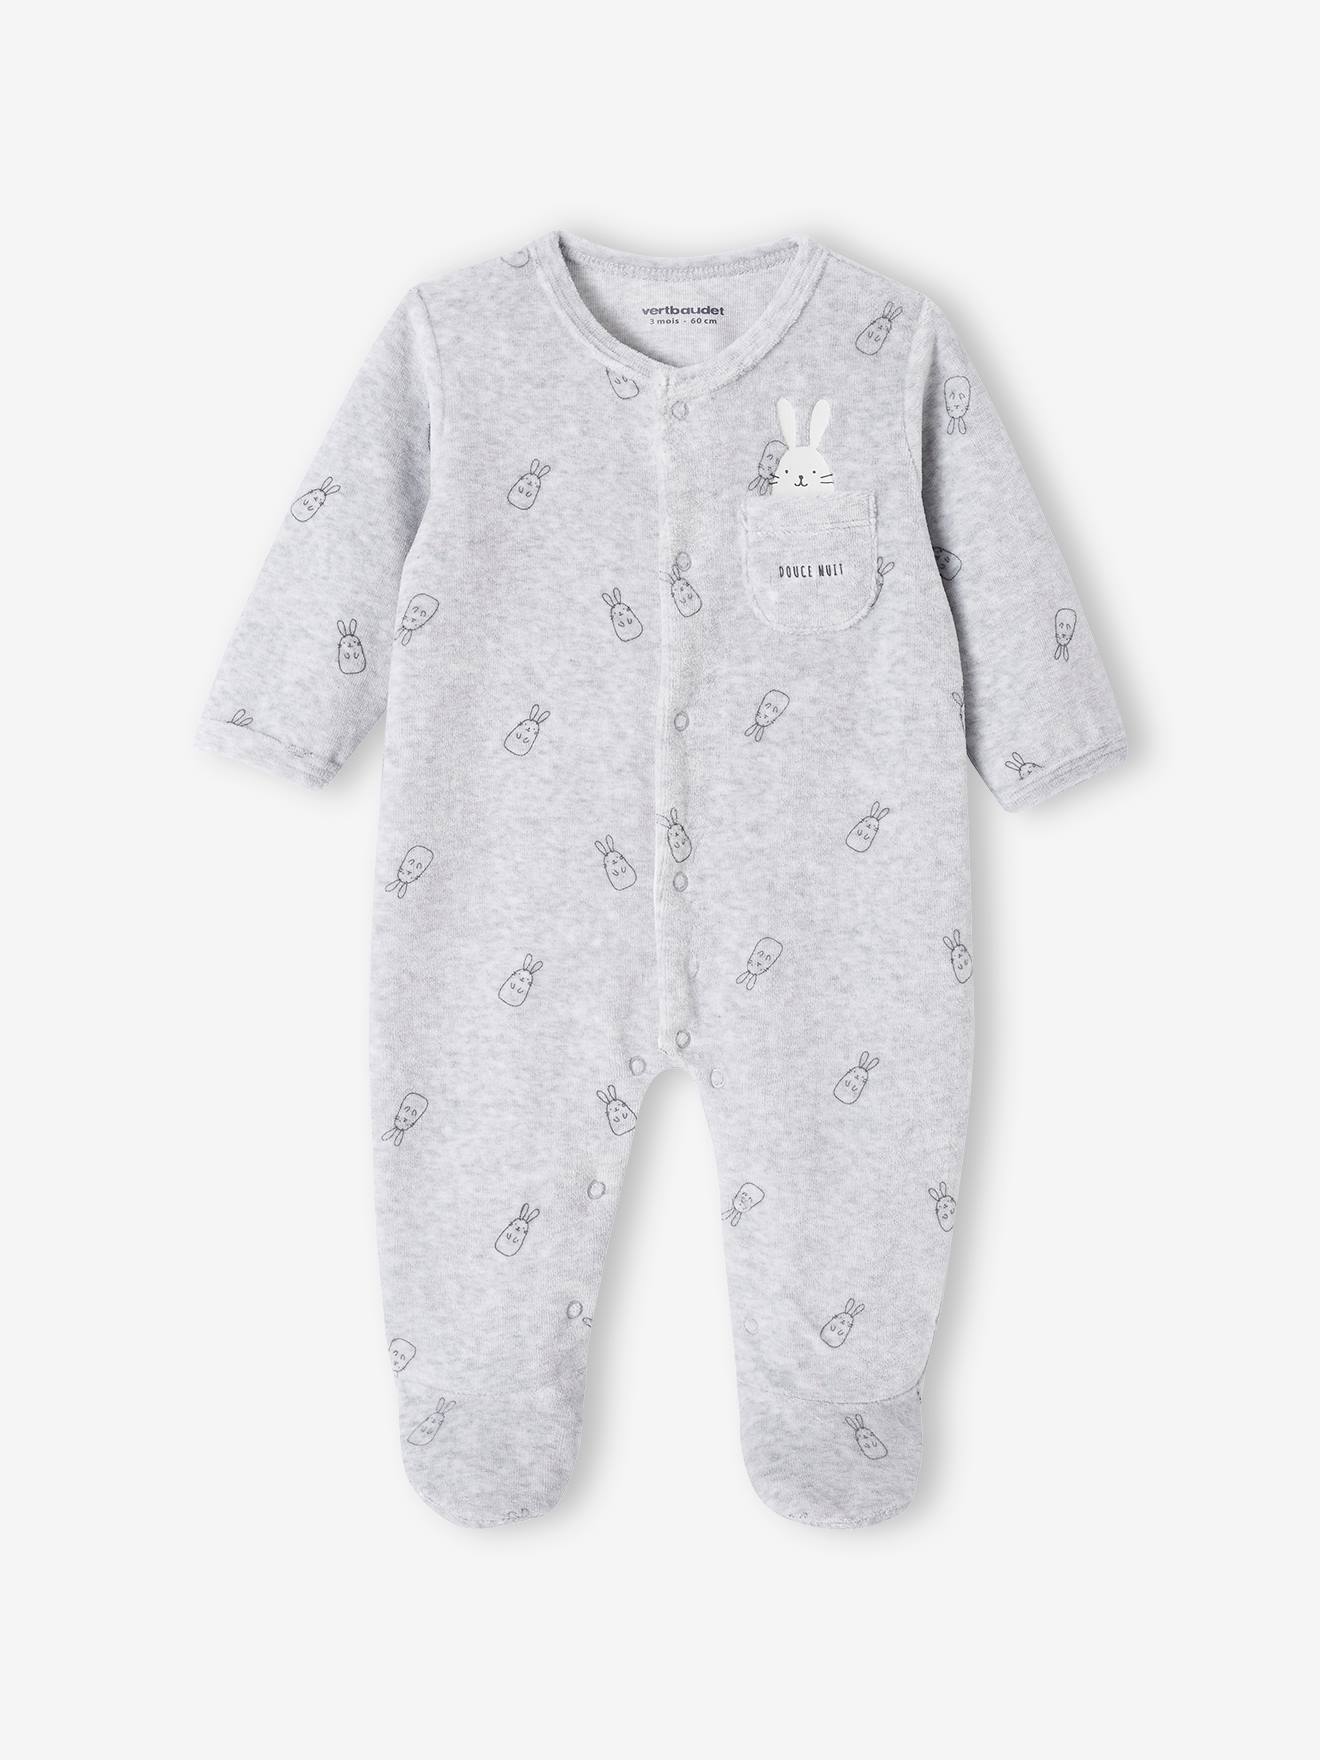 Bunnies Sleepsuit in Velour for Newborn Babies marl grey